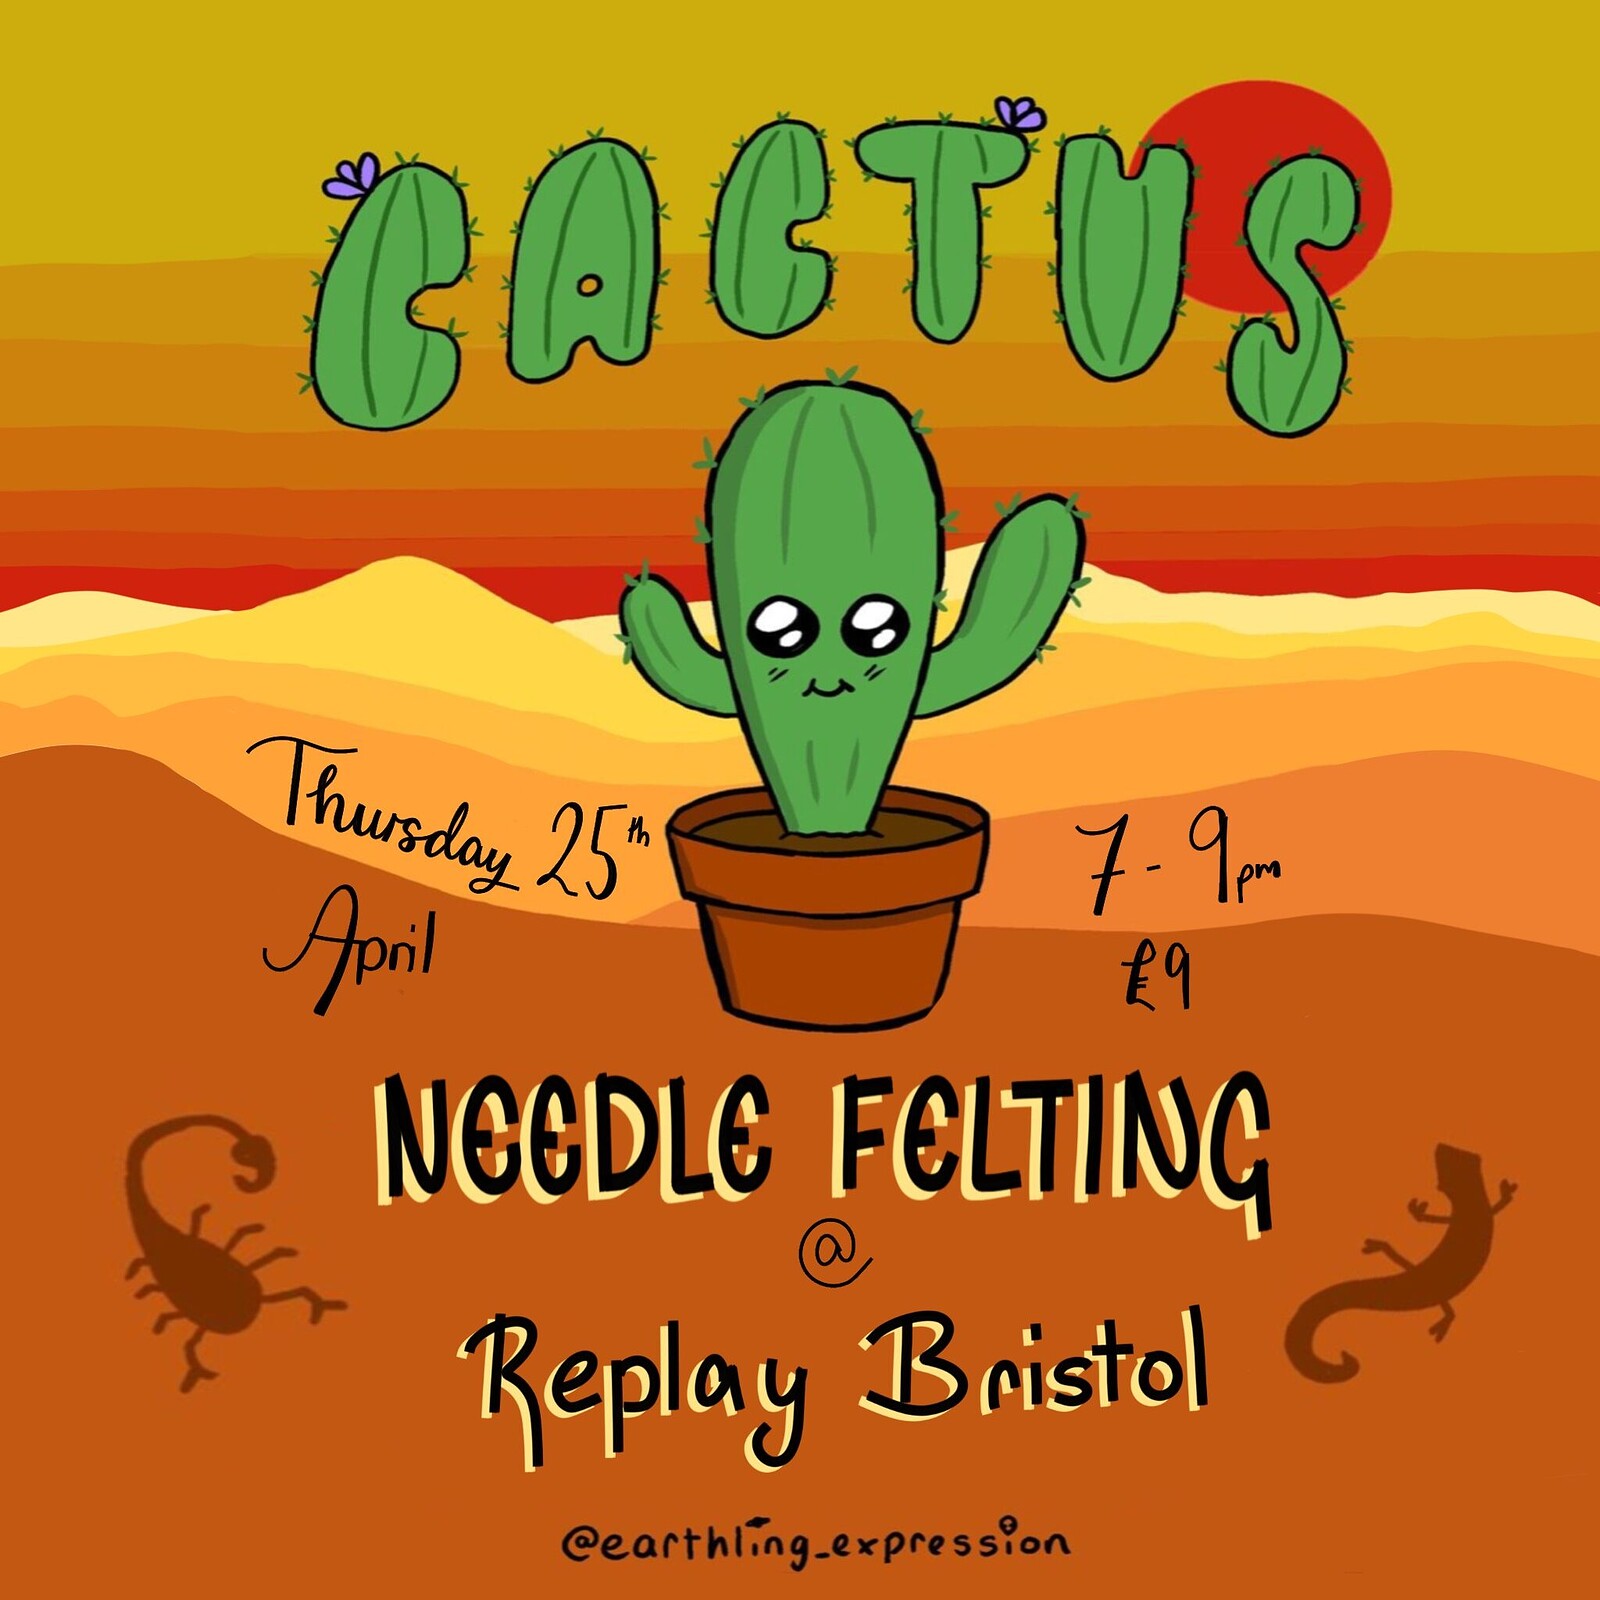 Cactus Felting Workshop at Bristol Board Game Bar